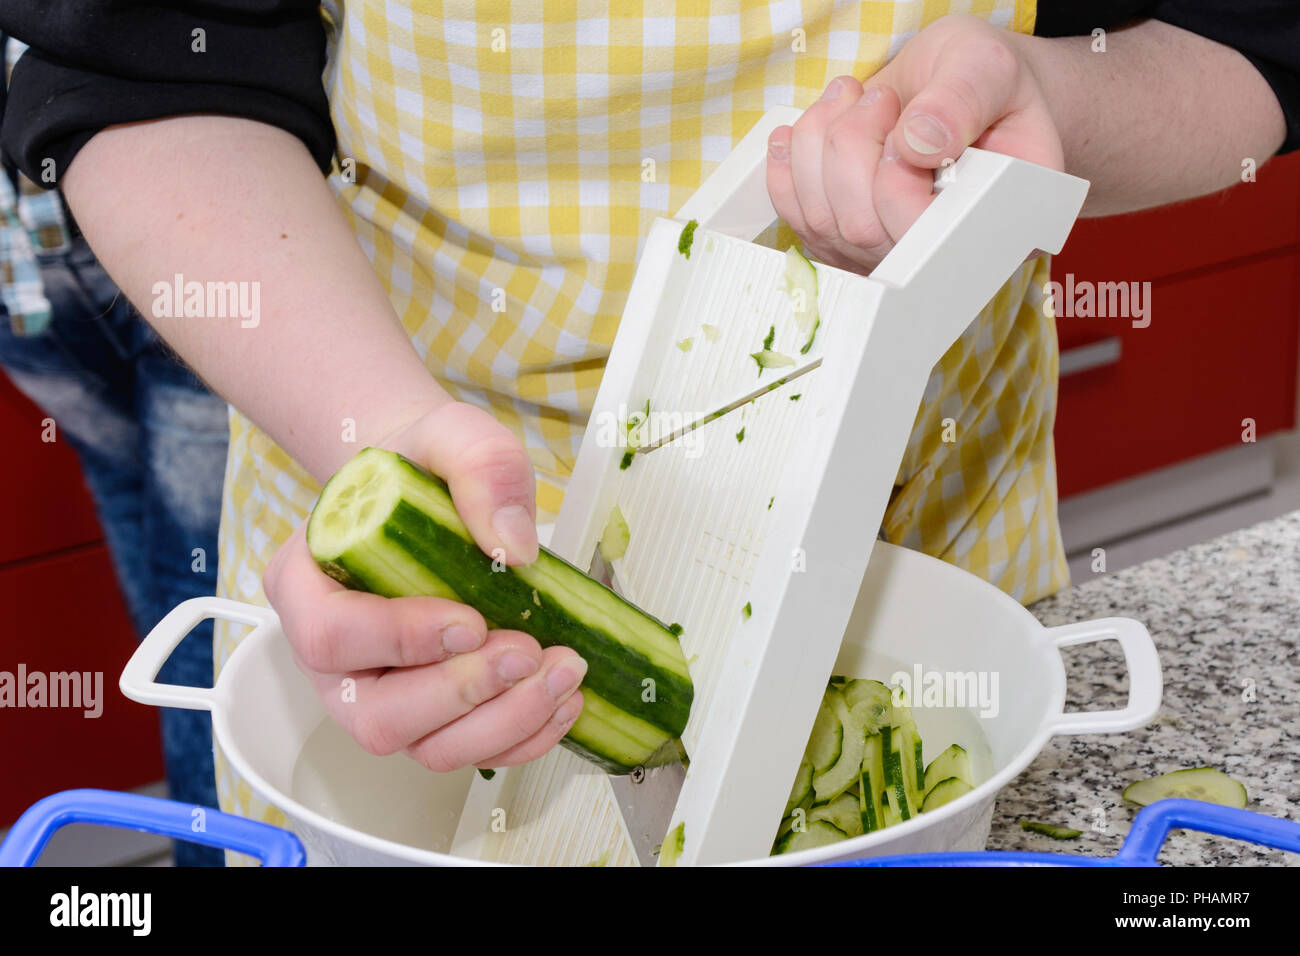 Kochen schneiden Gurken mit Gemüse Schichten für Salat Stockfotografie -  Alamy